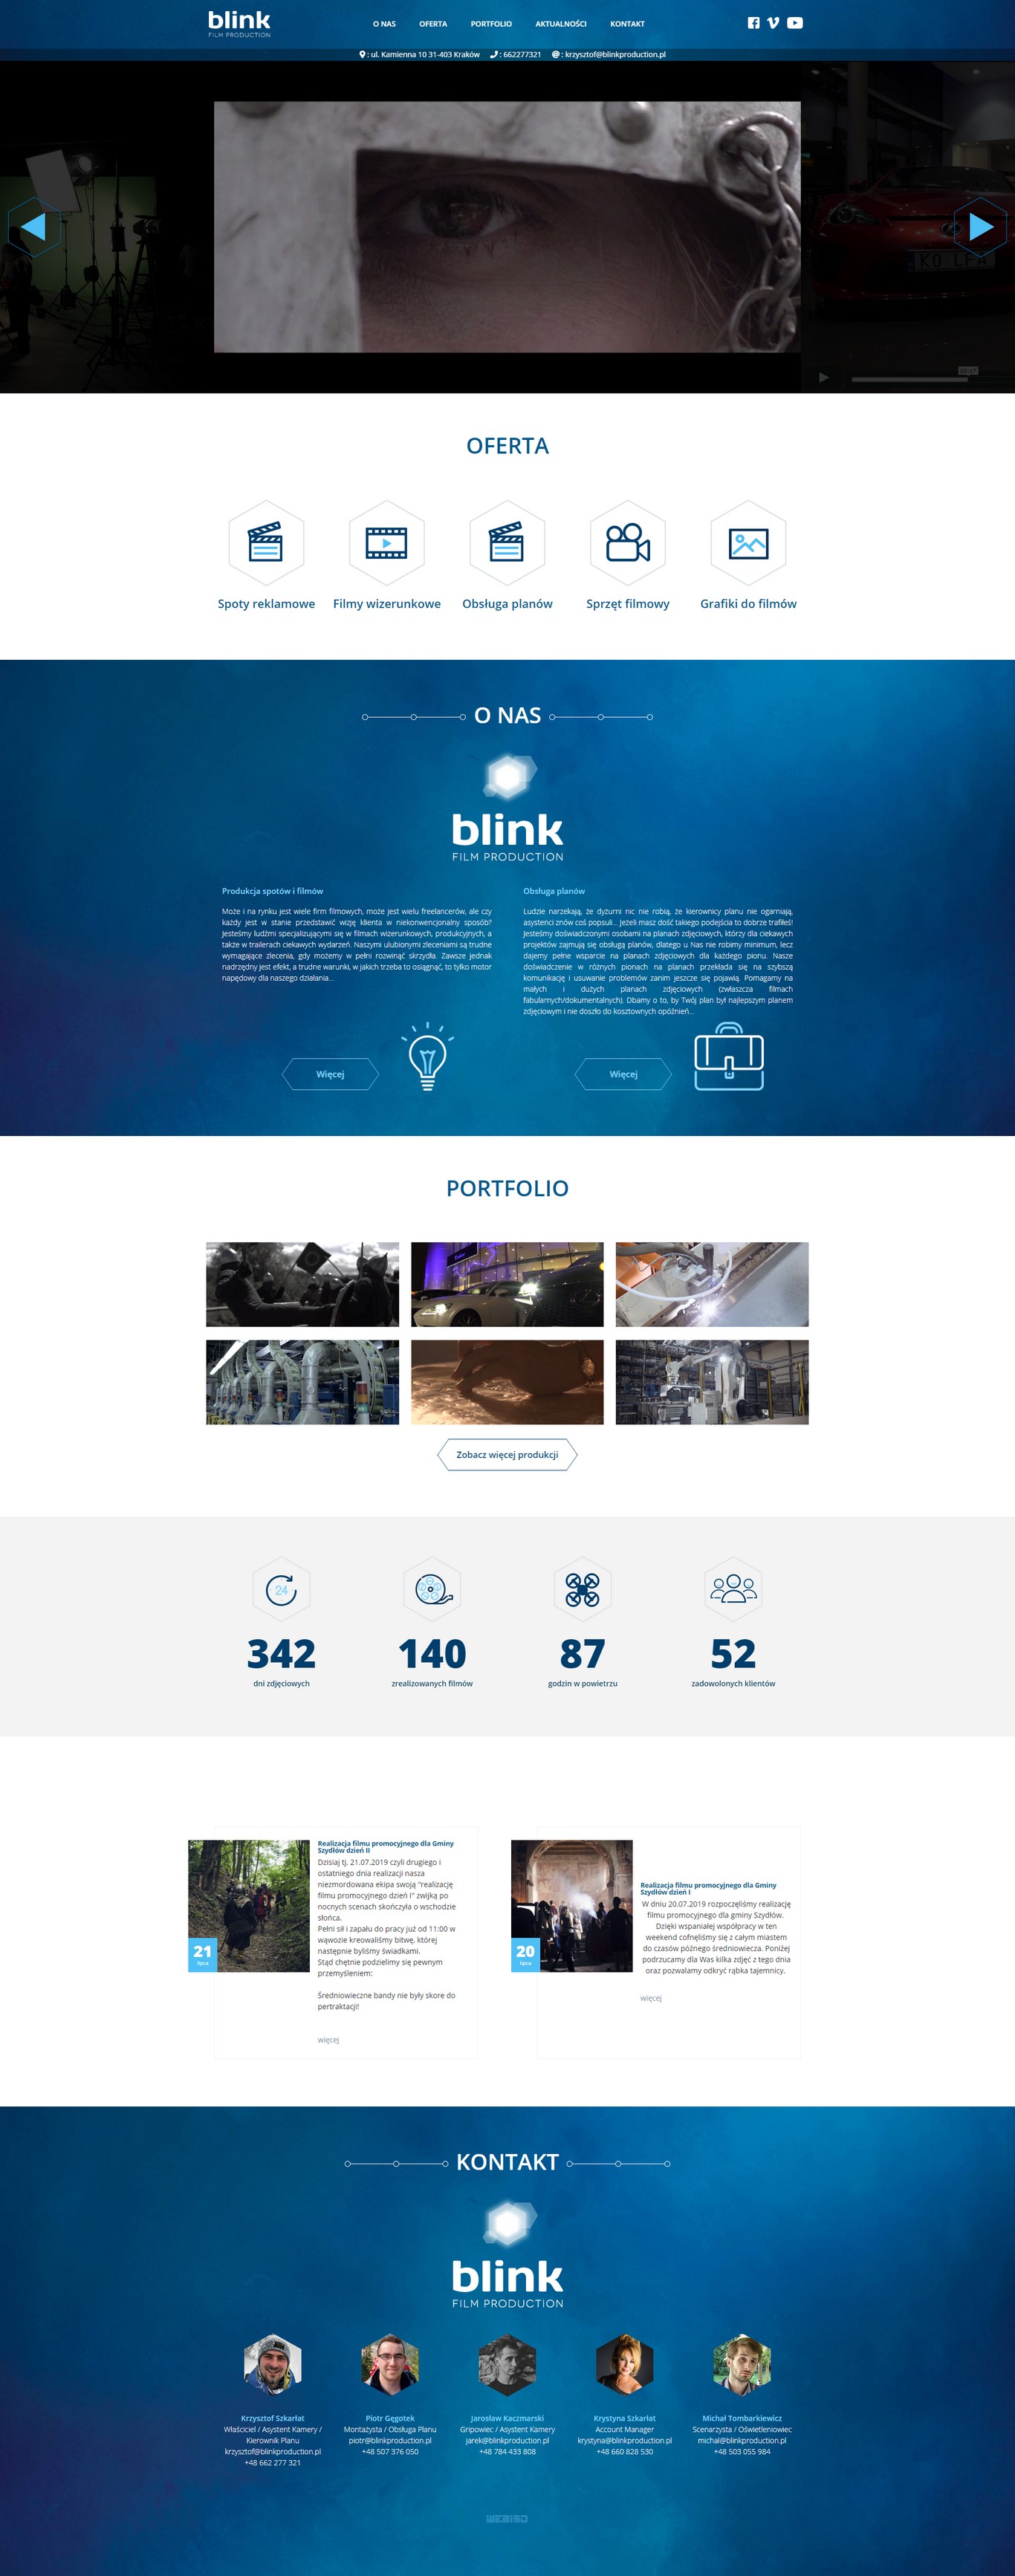 blink1.jpg